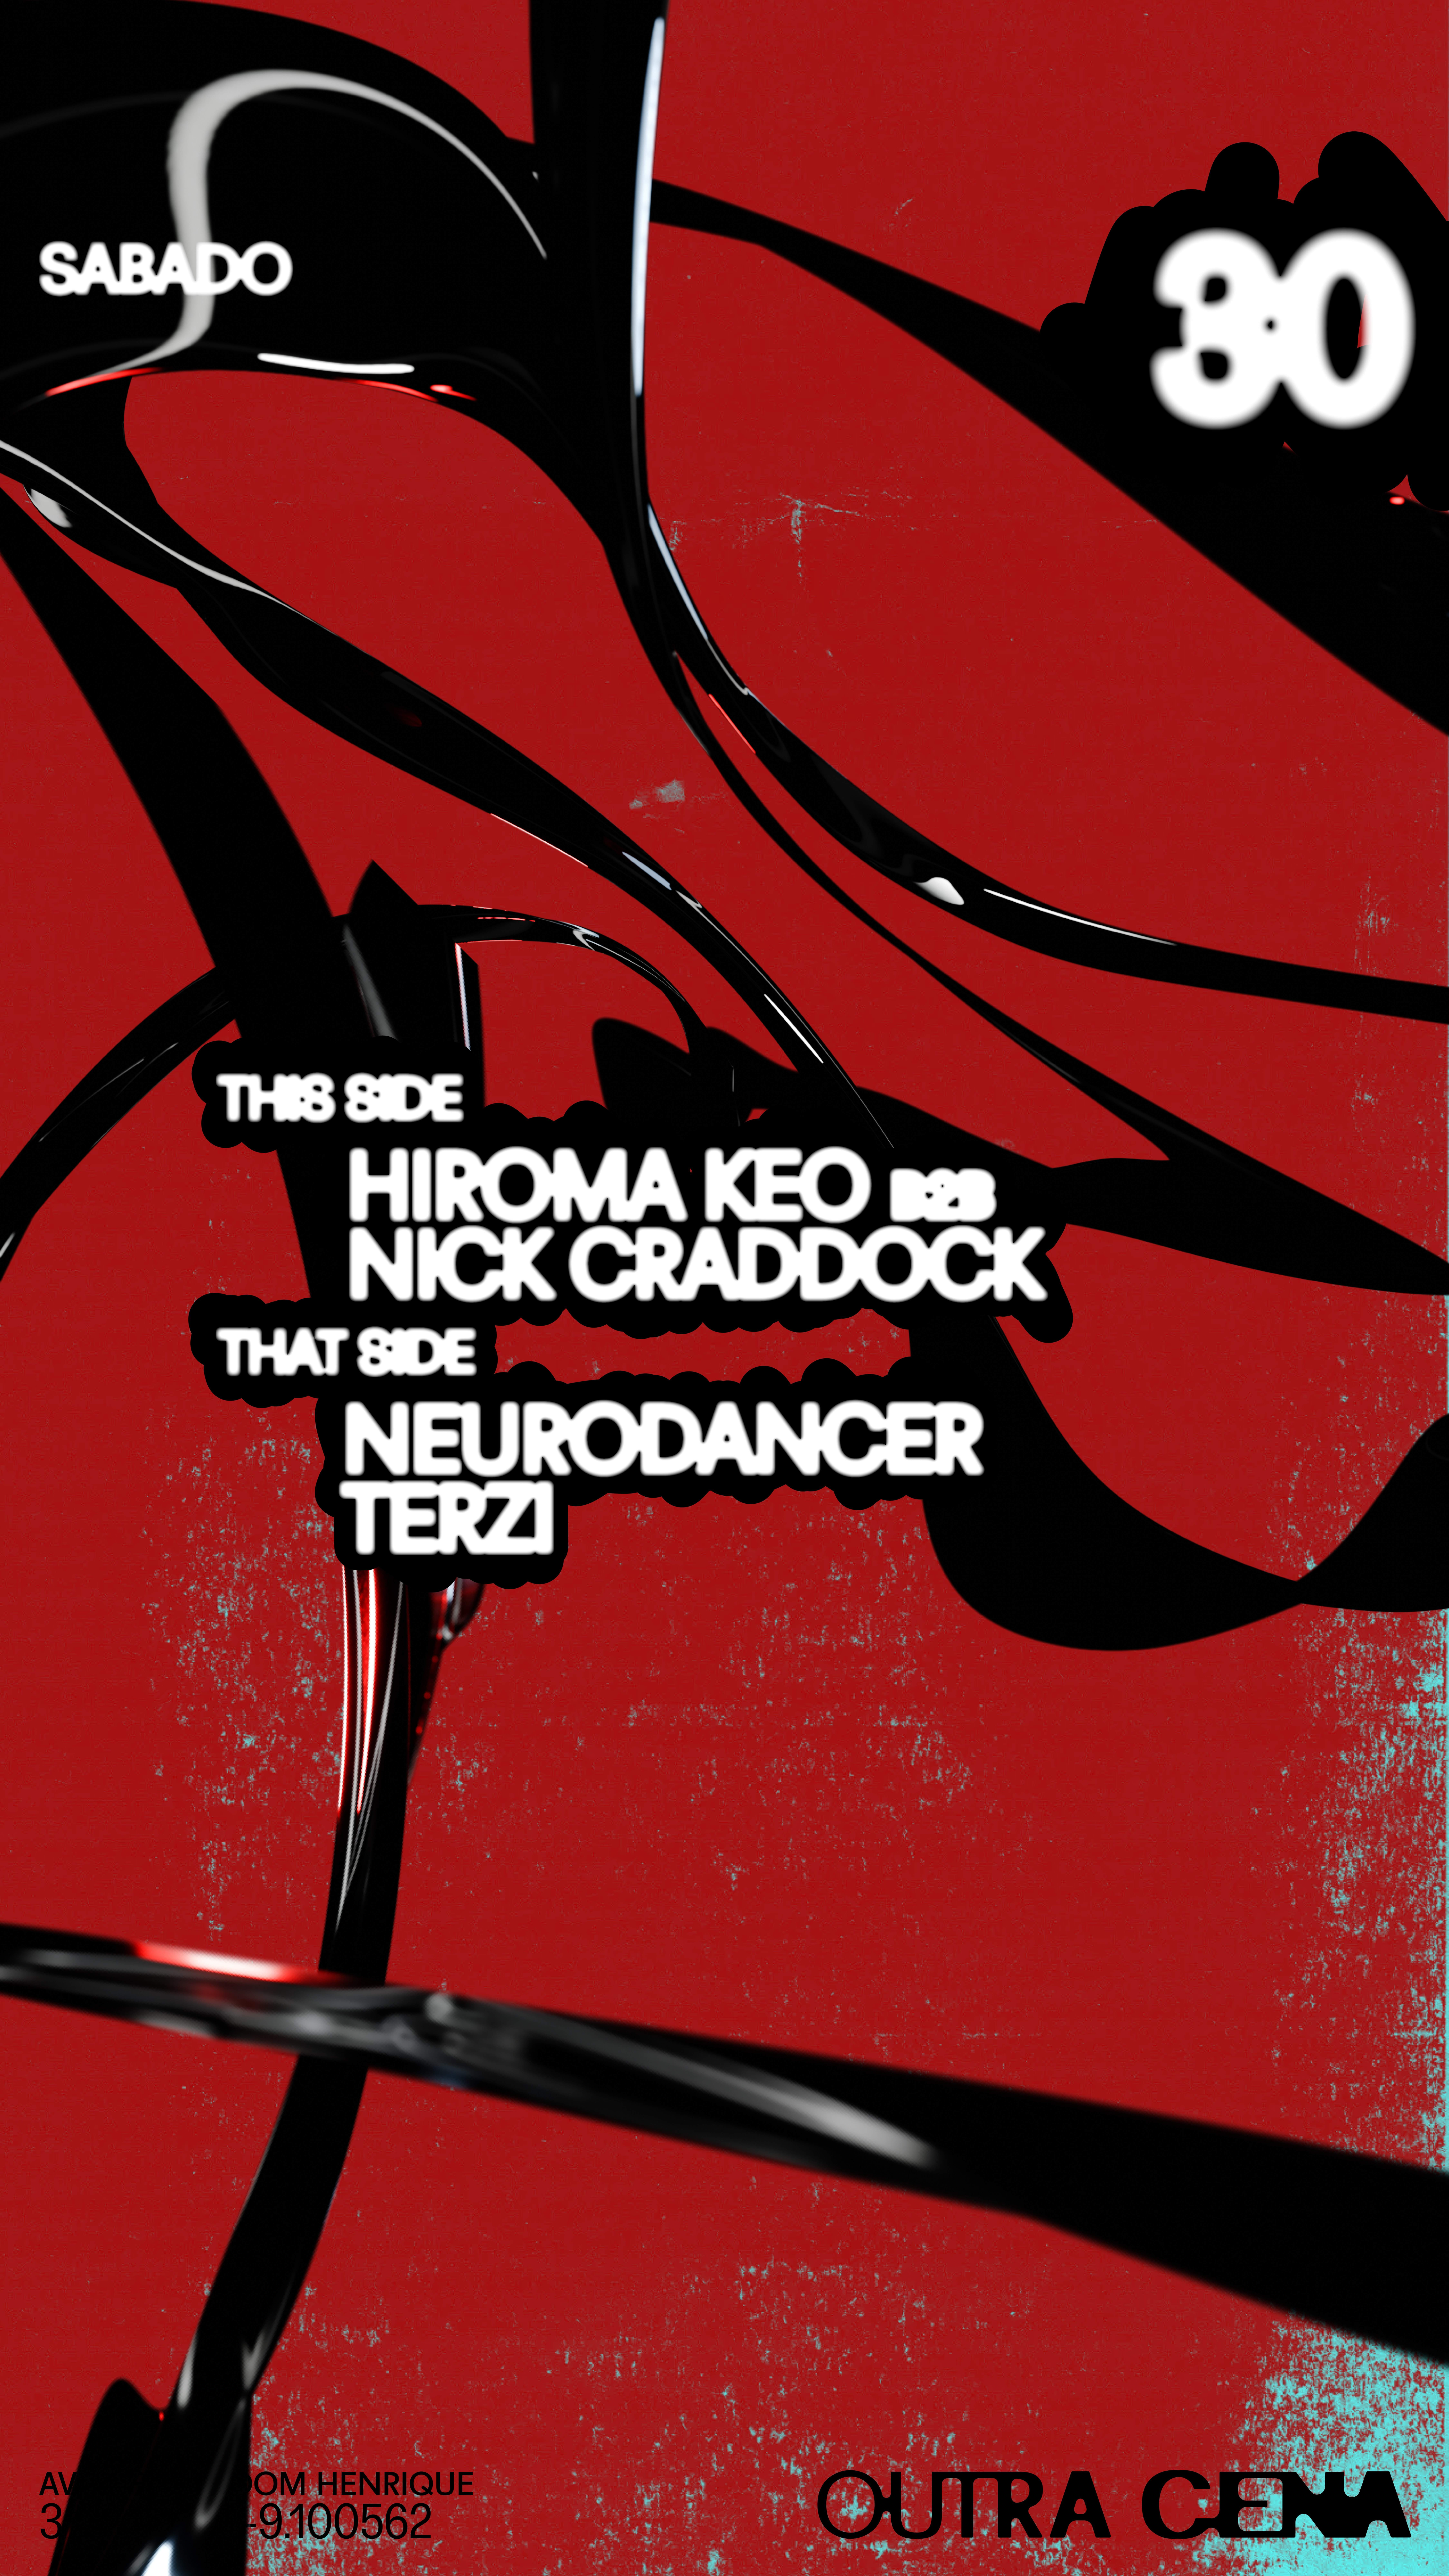 Hiroma Keo b2b Nick Craddock, Neurodancer, Terzi - Página trasera